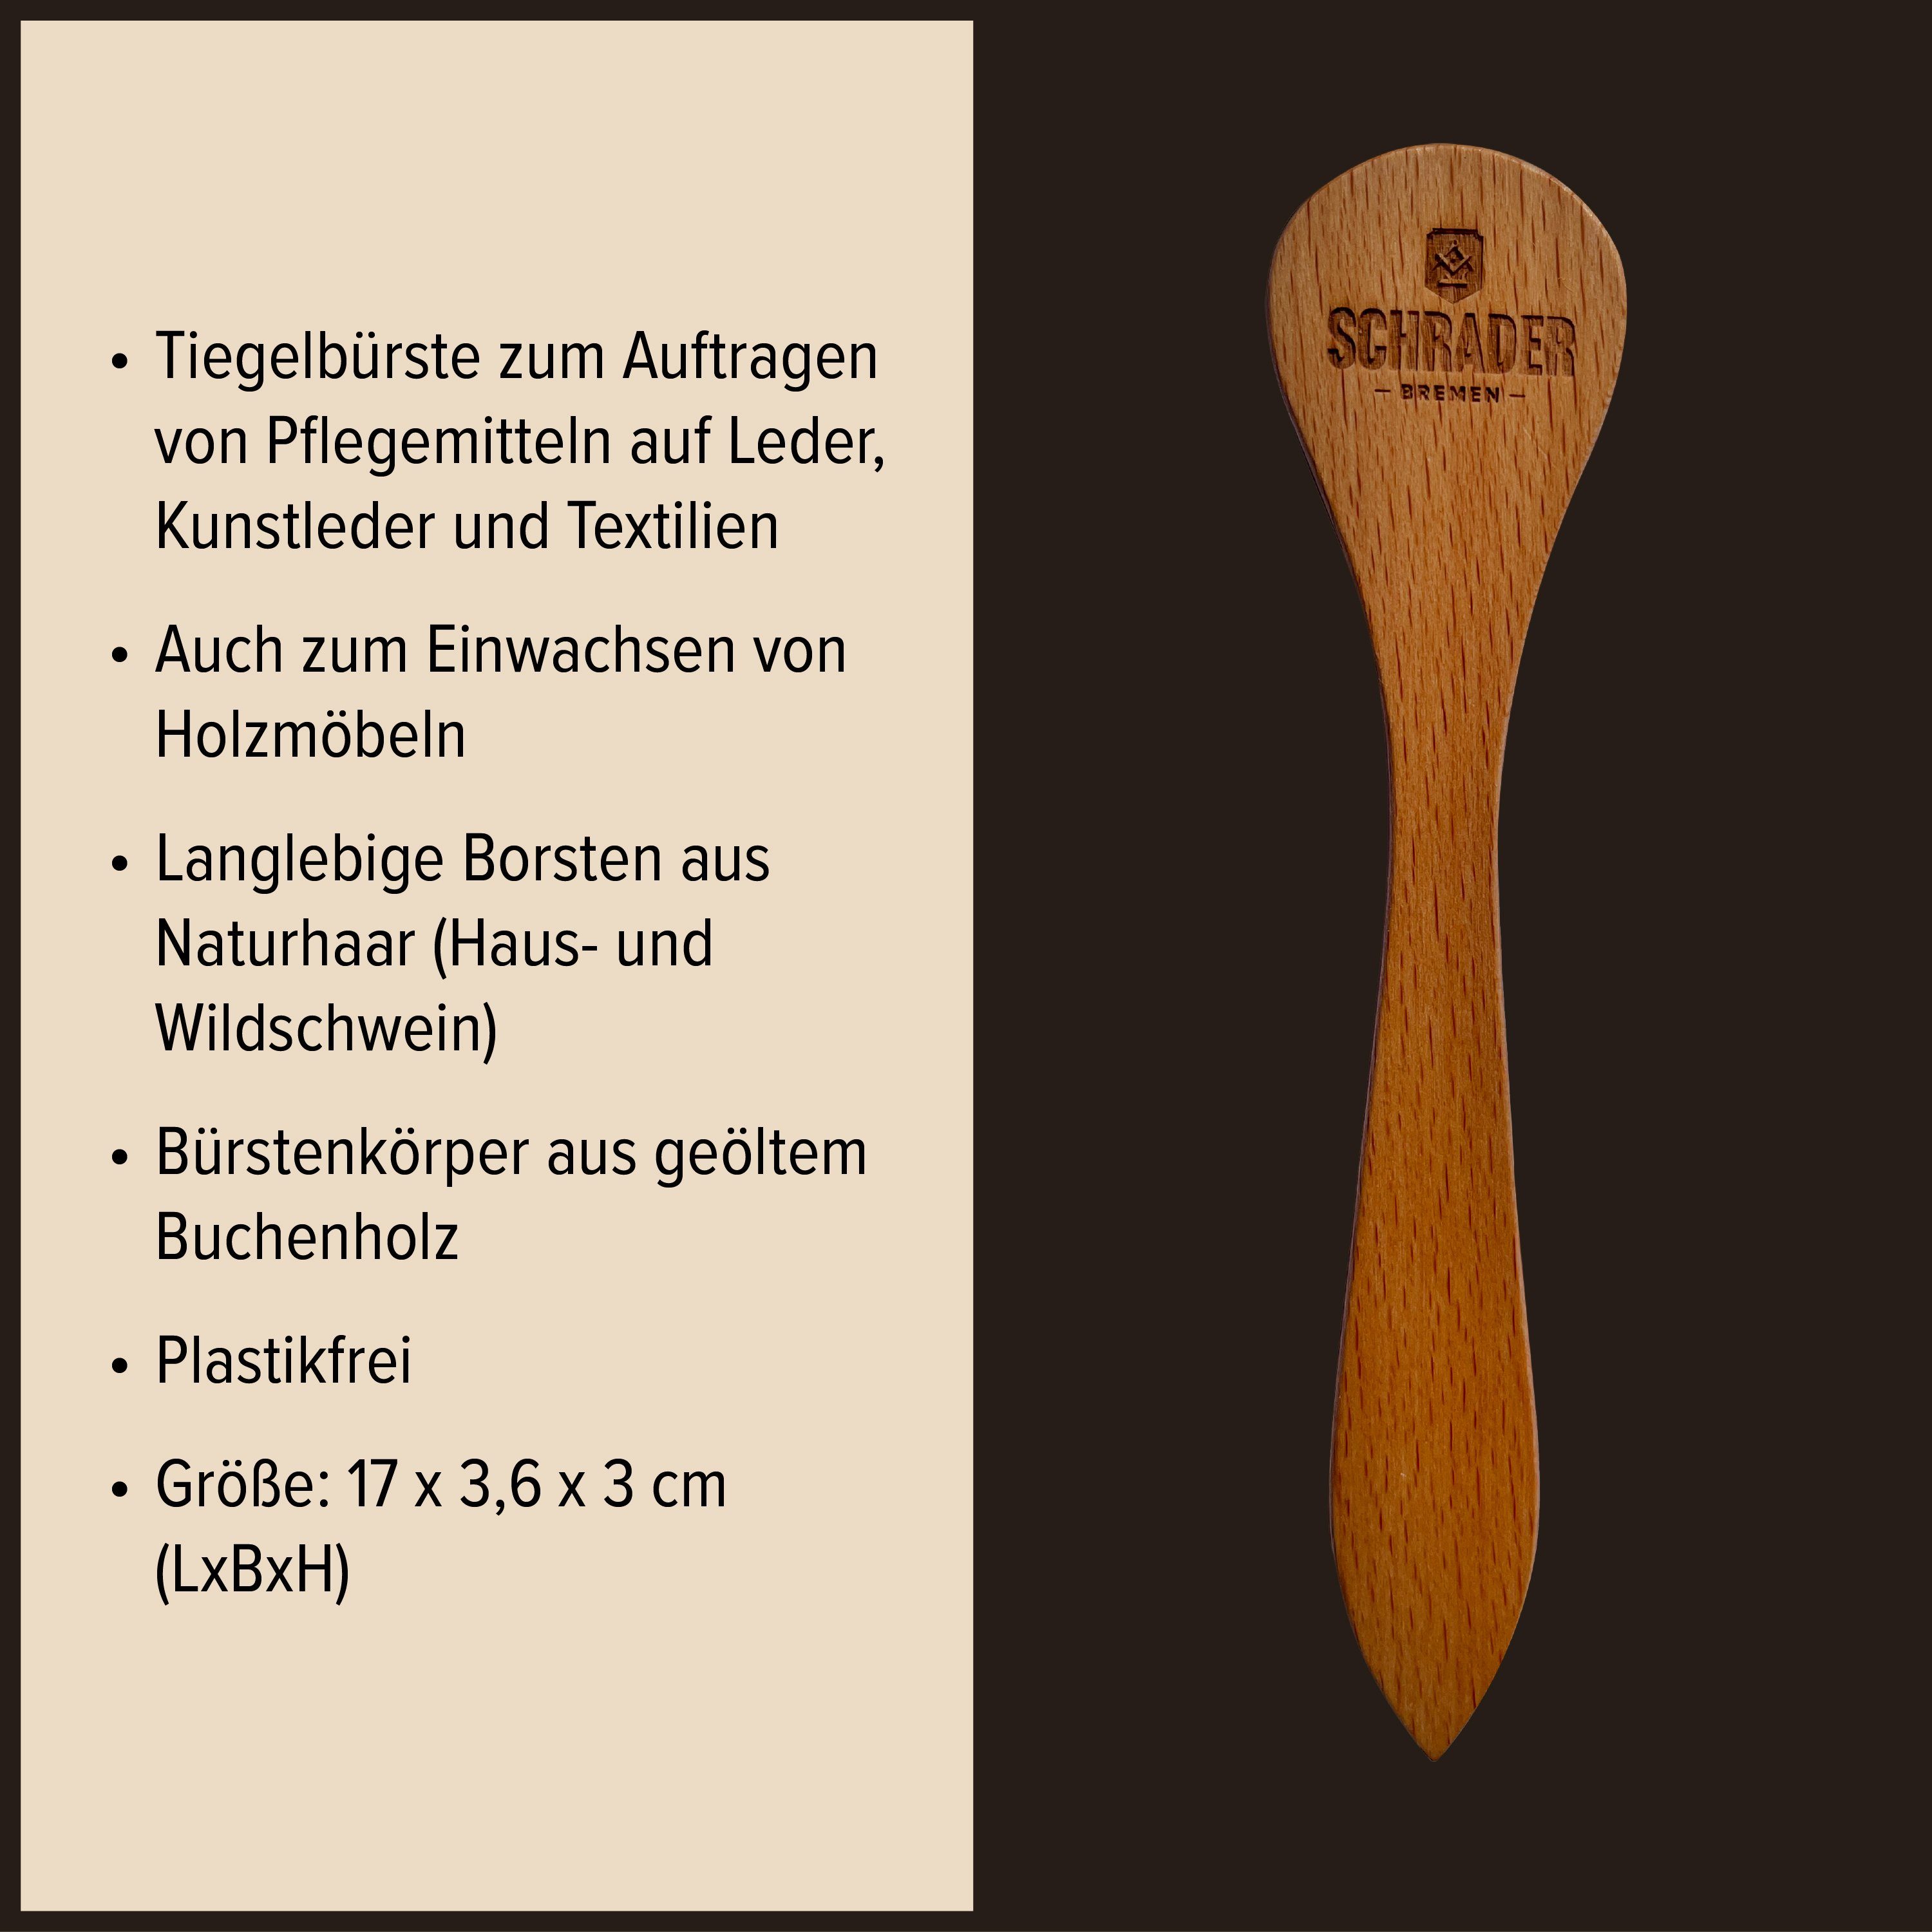 Schrader Schuhputzbürste zur 3 Made in Bürsten Schuhbürsten-Set - Schuhpflege -, - aus Reinigungsbürsten Buchenholz Germany